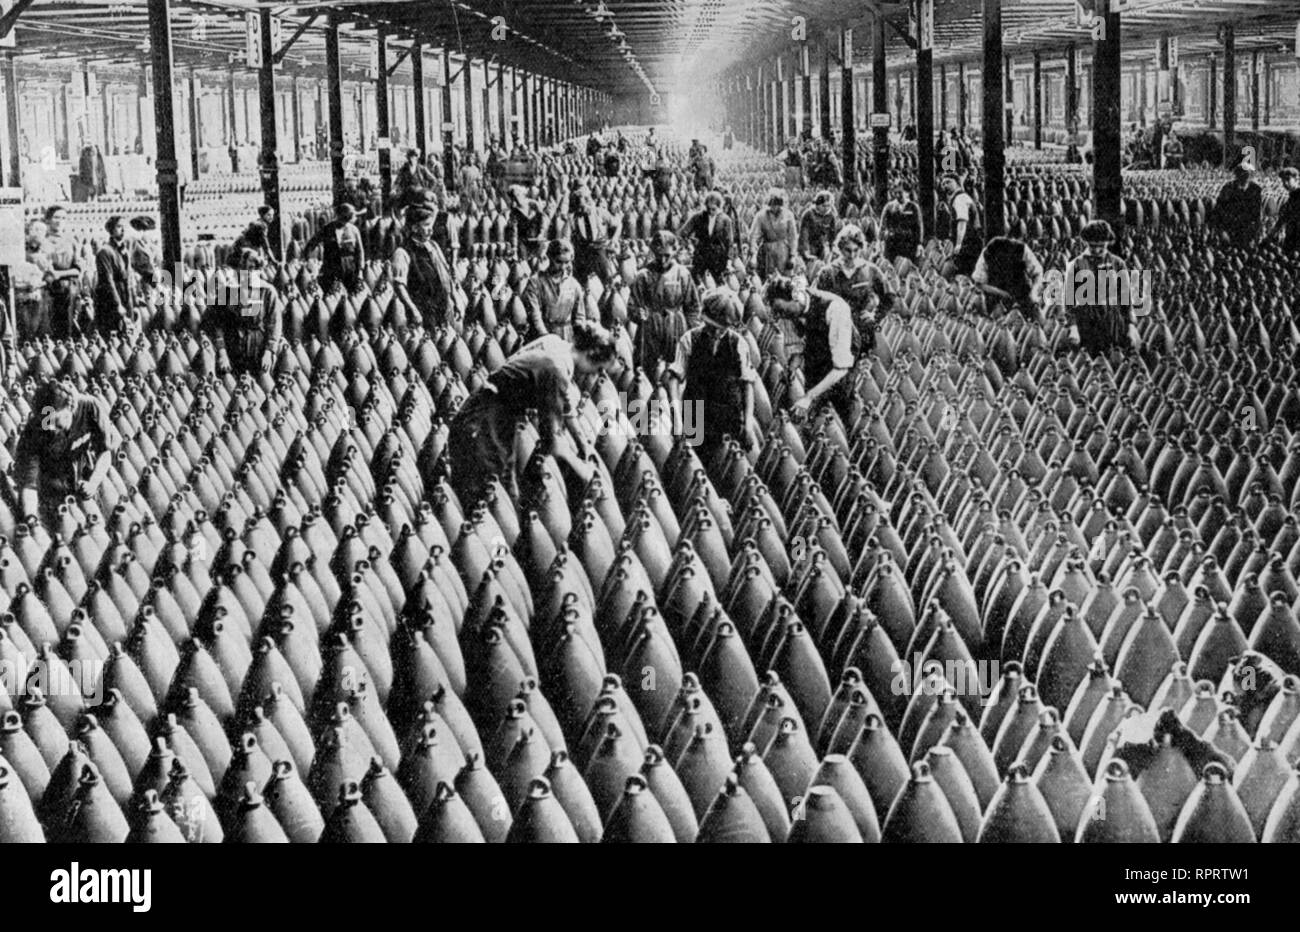 Scène dans une usine de munitions de temps de guerre.Les munitionettes étaient des femmes britanniques employées dans les usines de munitions pendant la première Guerre mondiale.Usine nationale de conditionnement de coquillages n°6, Chilwell, Notinghamshire, 1917. Banque D'Images